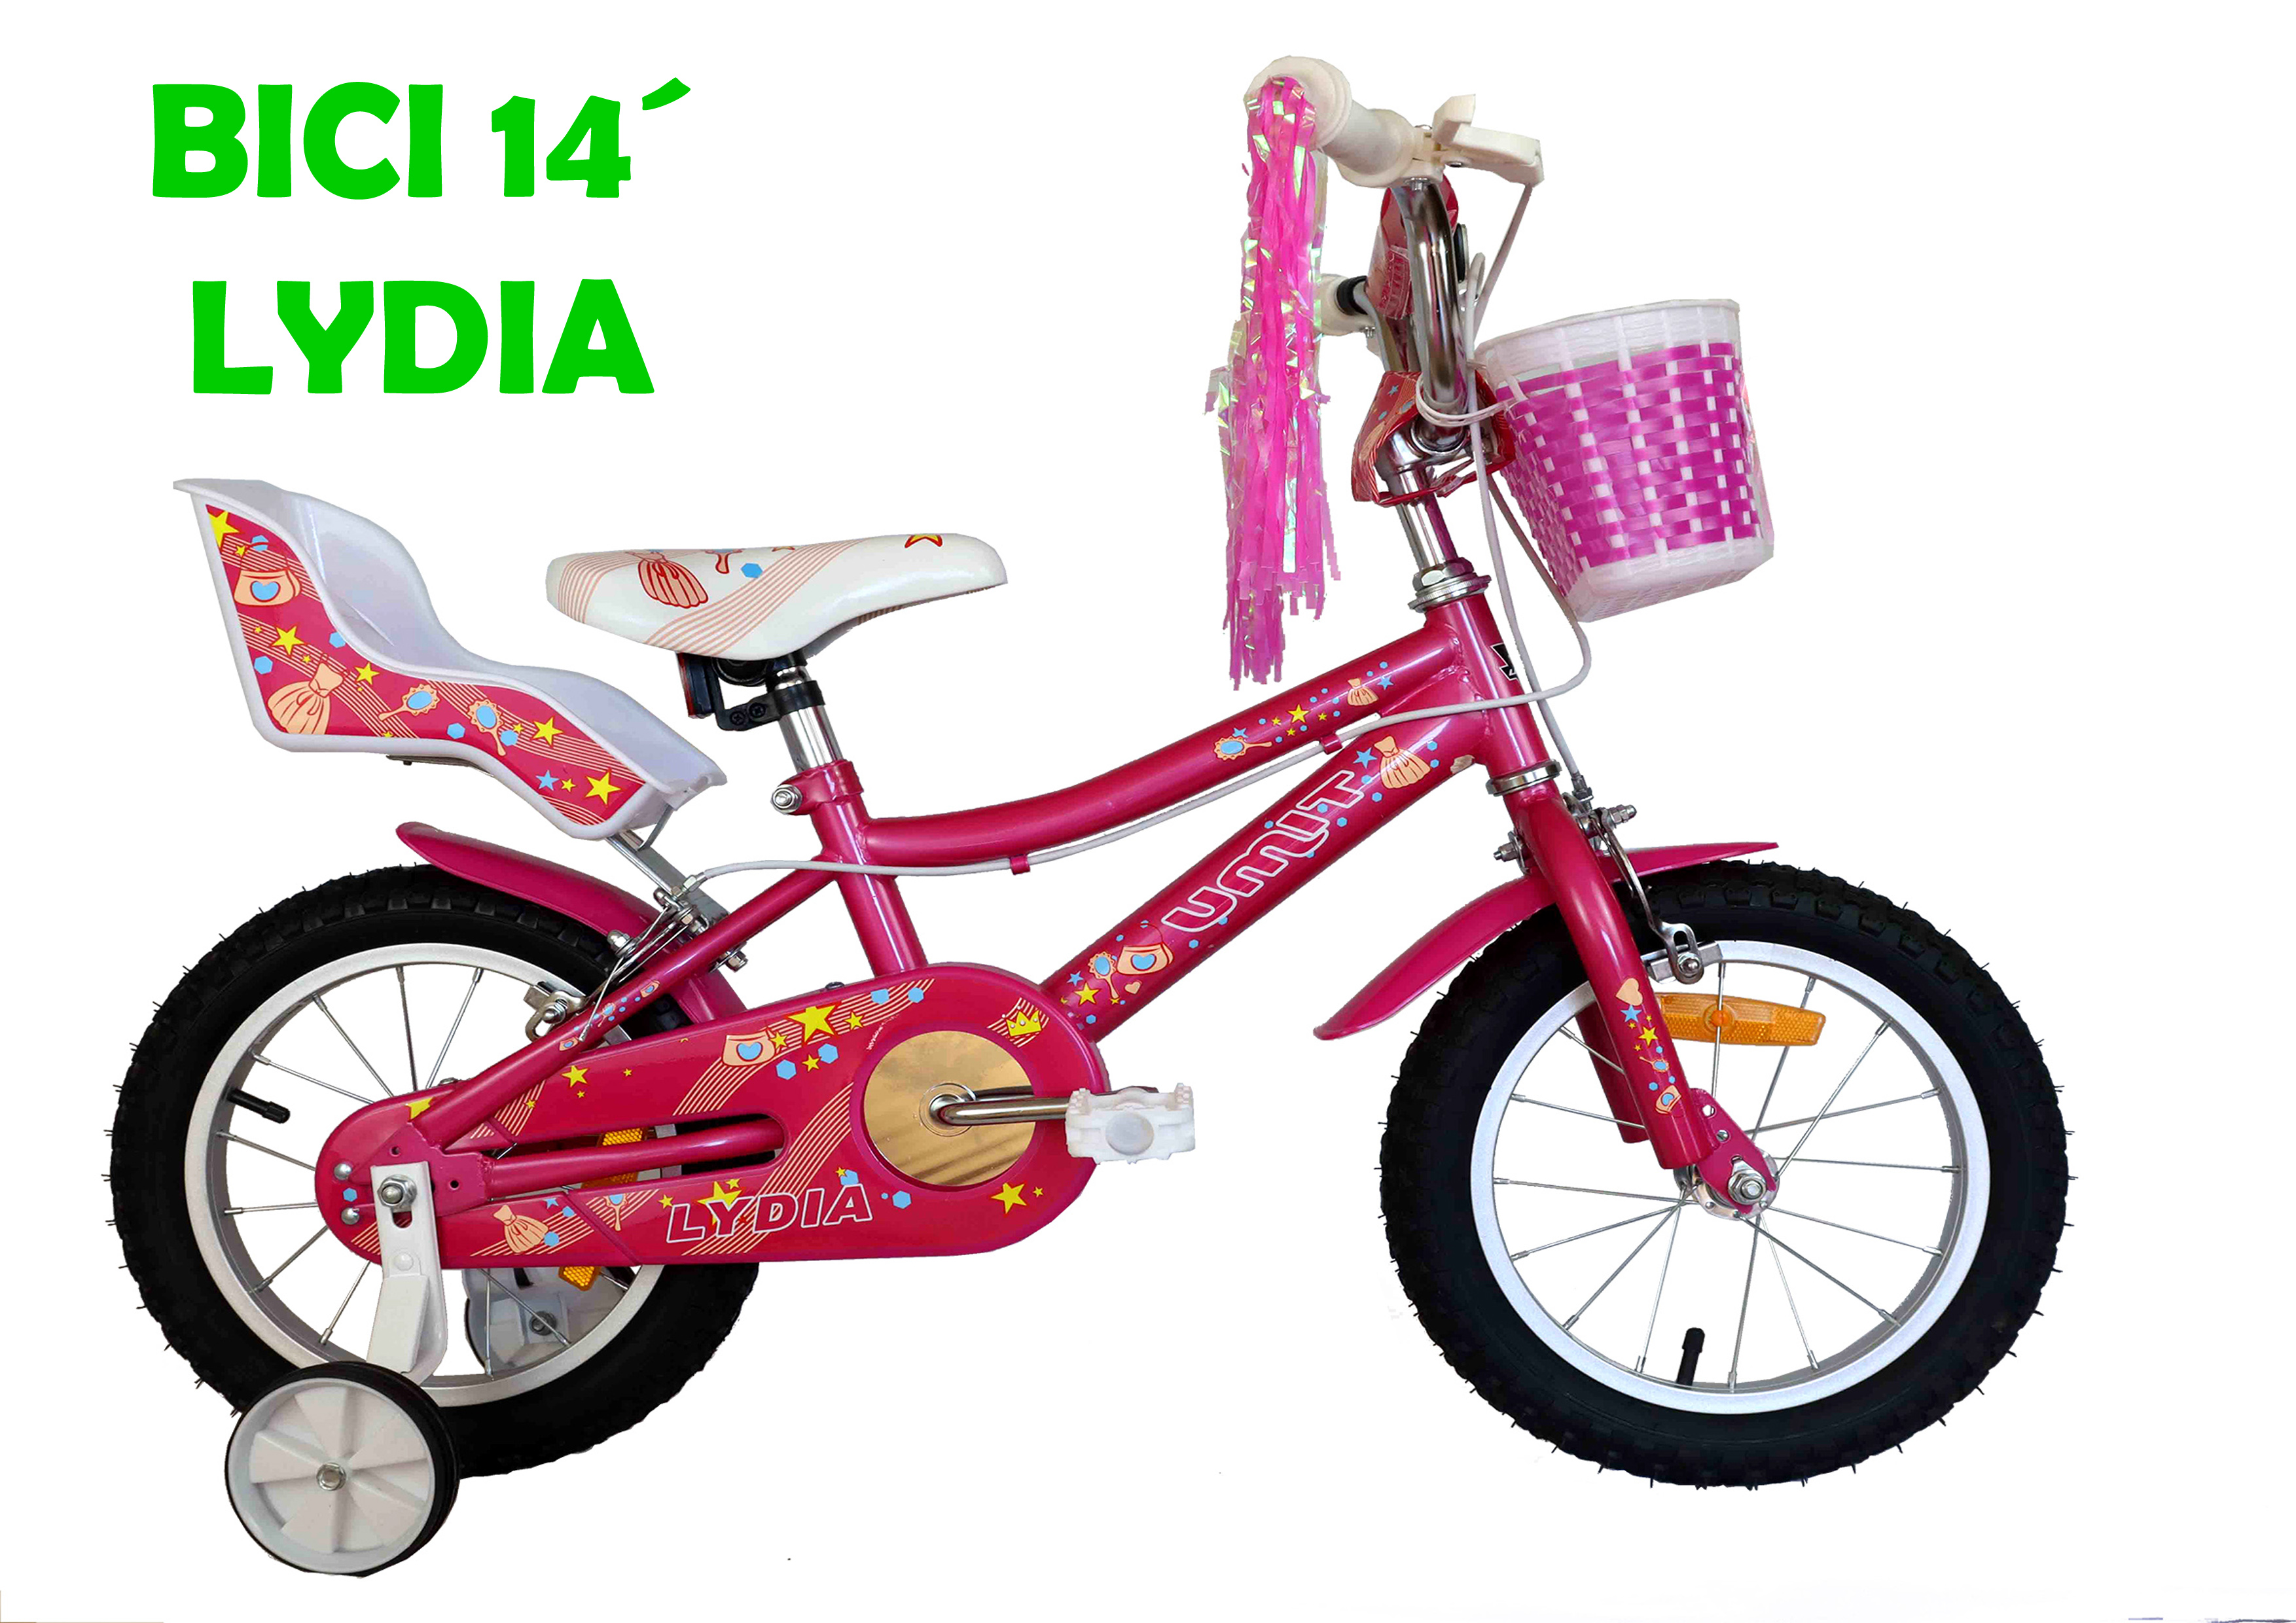 BICI 14" LYDIA J1461 - N59623